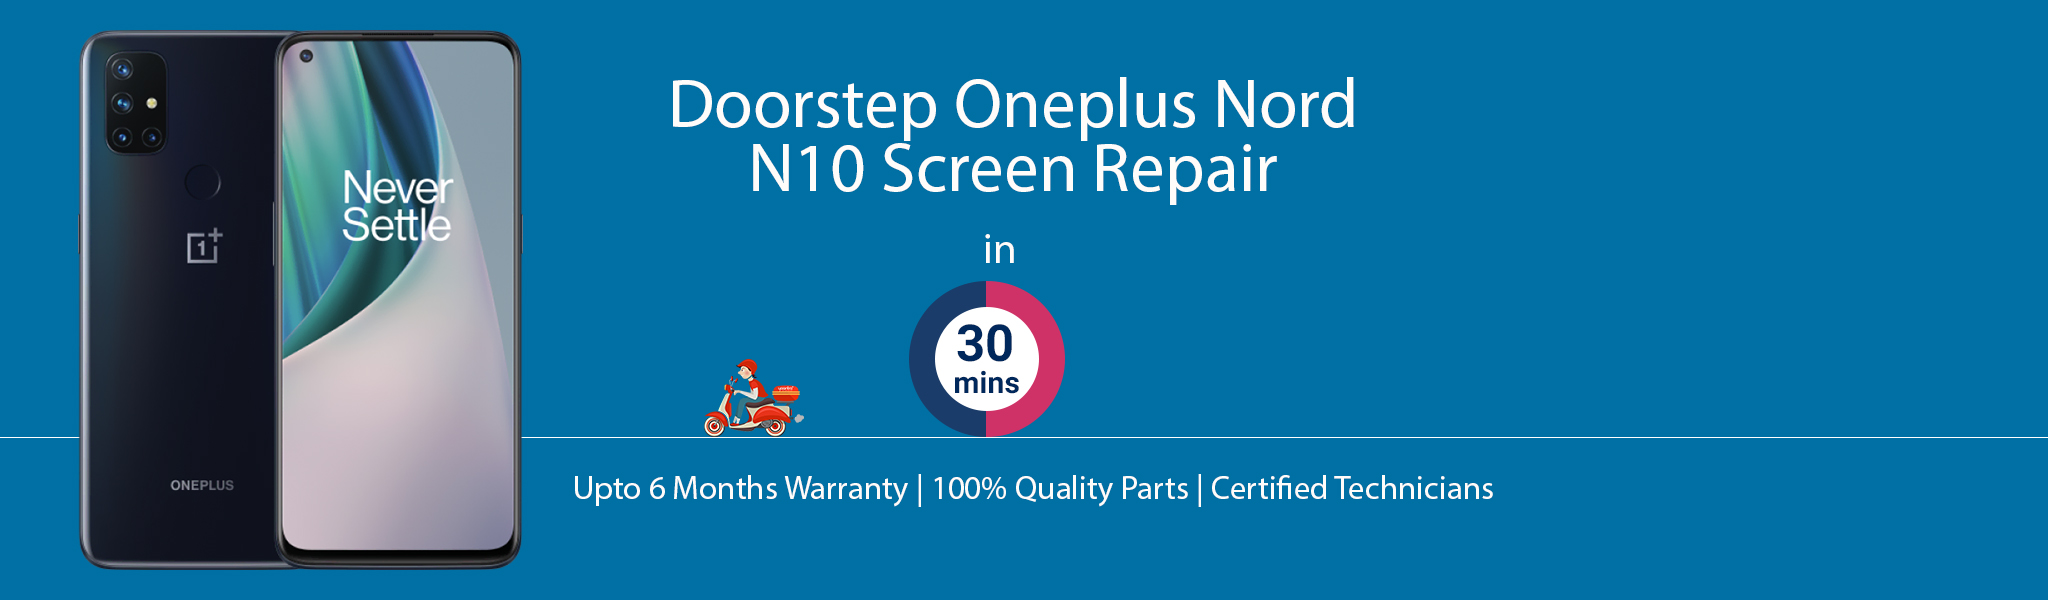 oneplus-n10-screen-repair.jpg